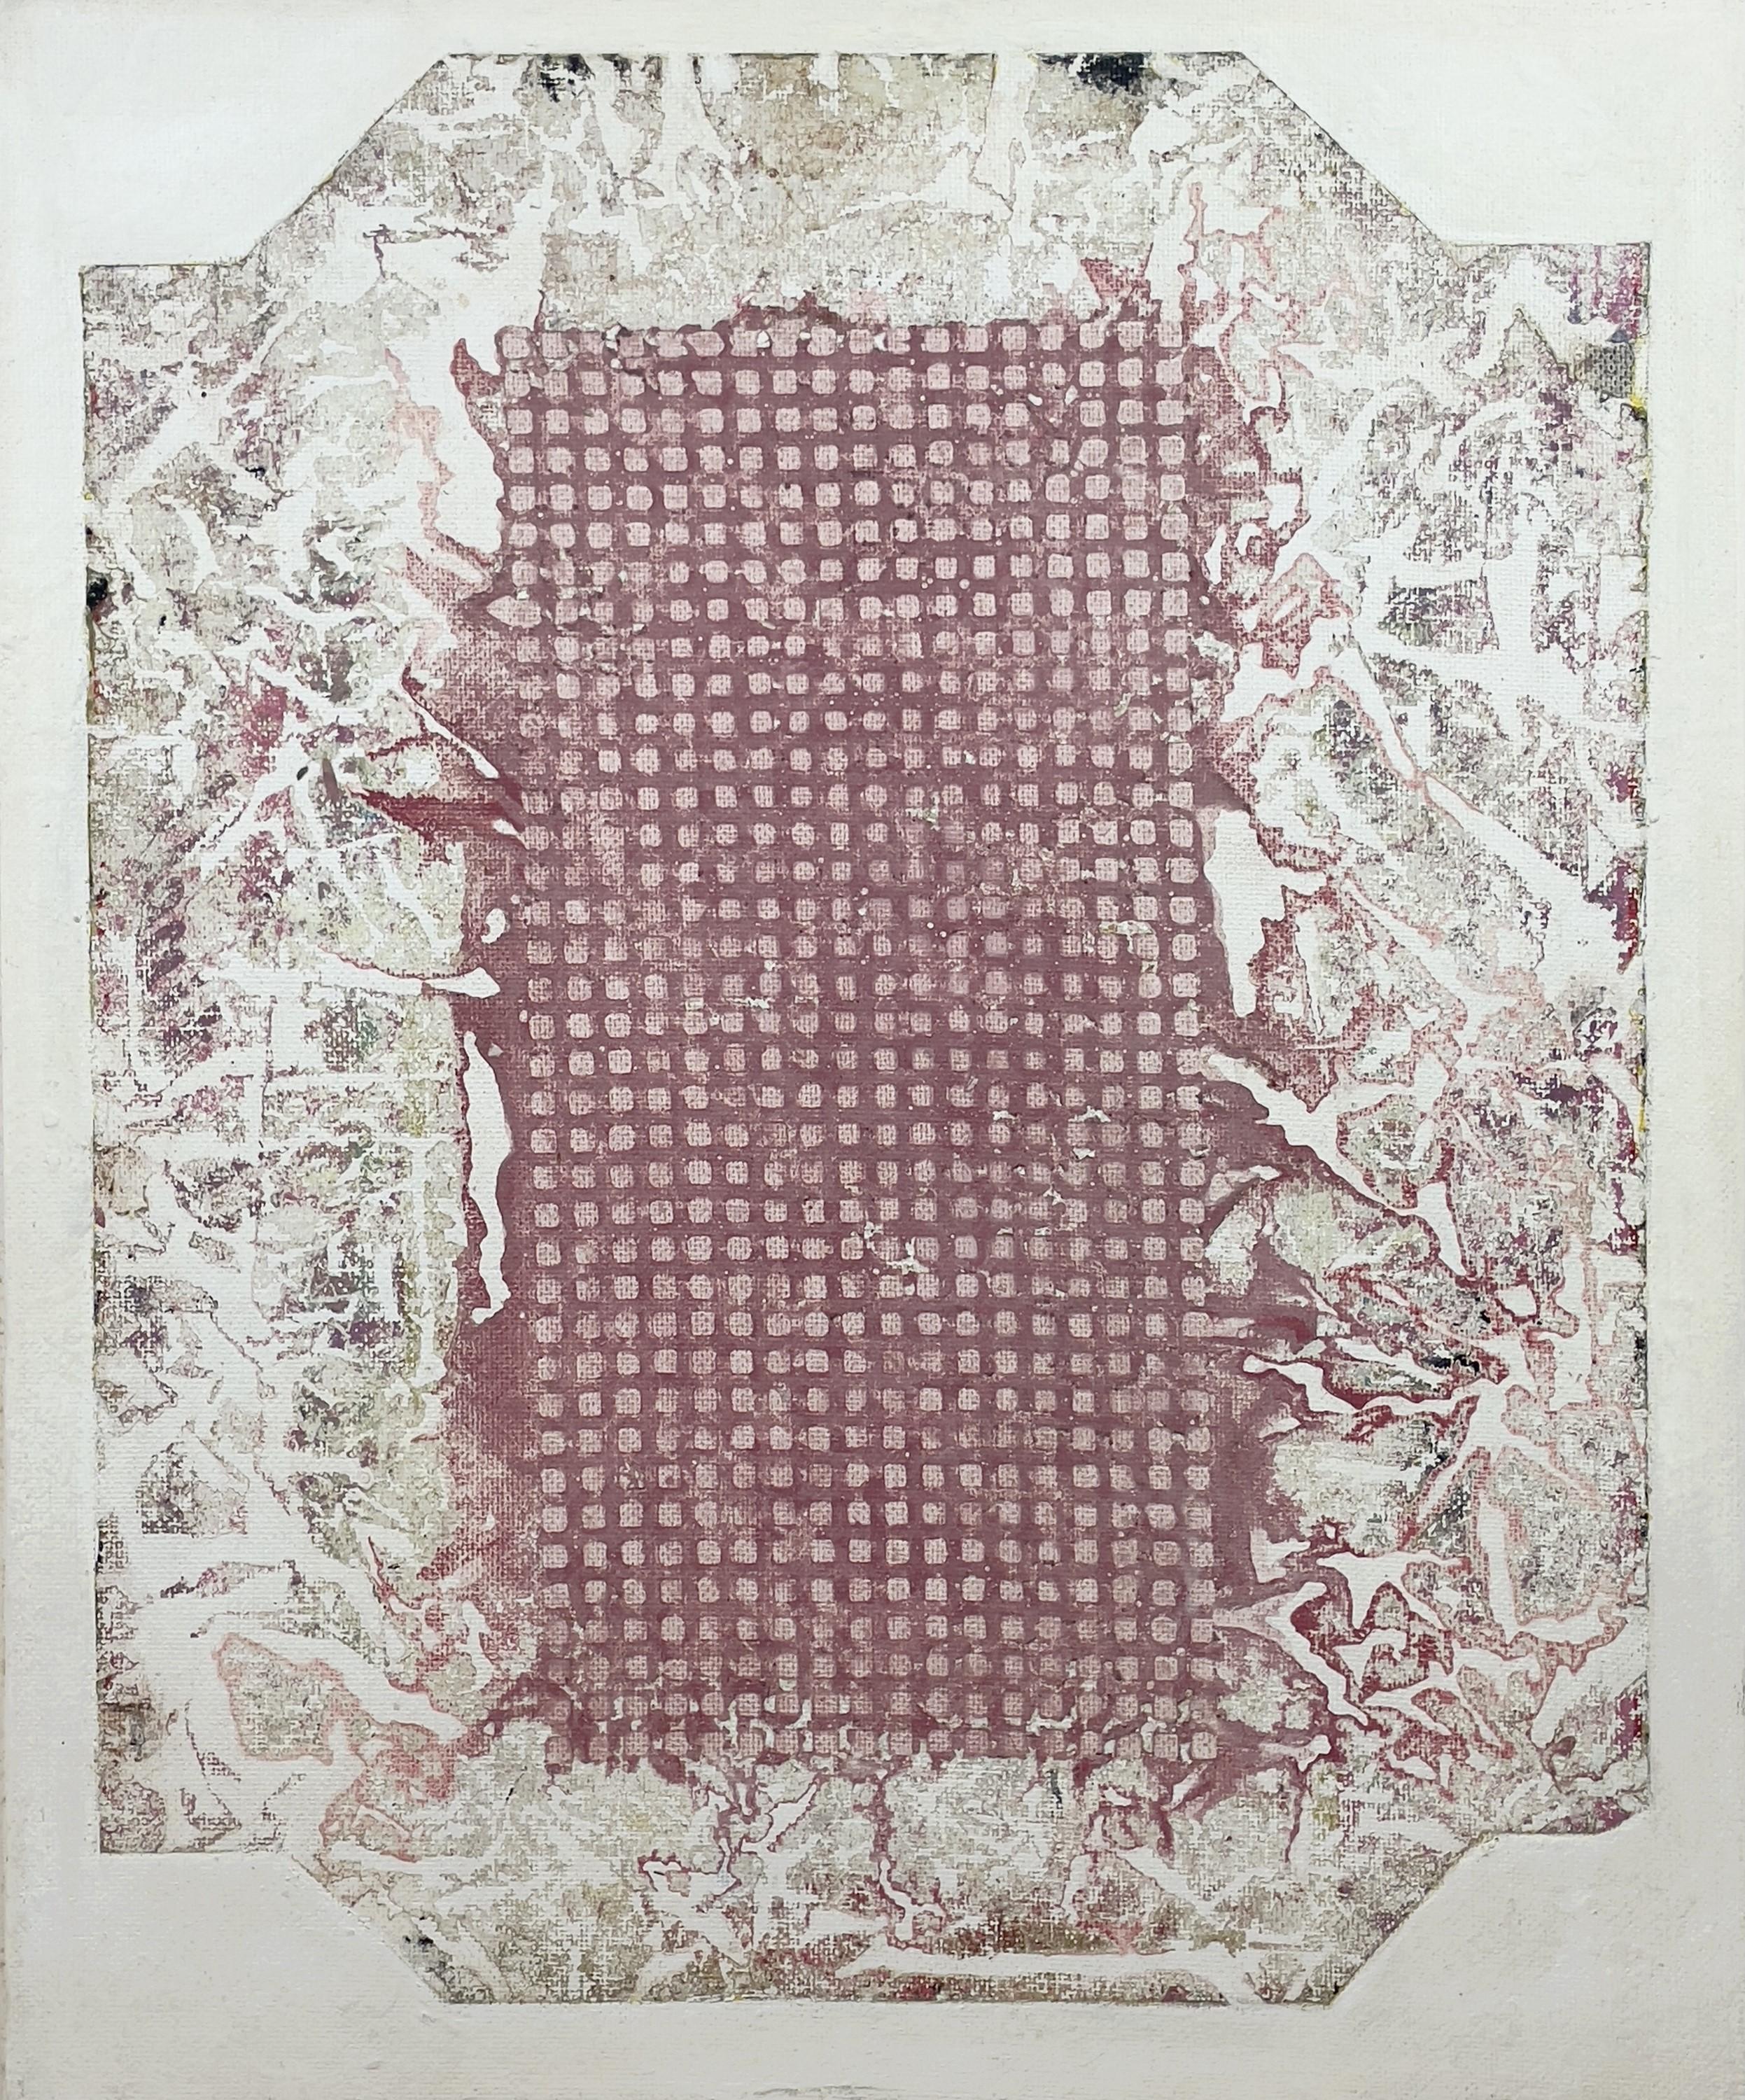 Prunella Clough Abstract Painting – "Wrapper"  Zeitgenössisches abstraktes Gemälde in Mischtechnik